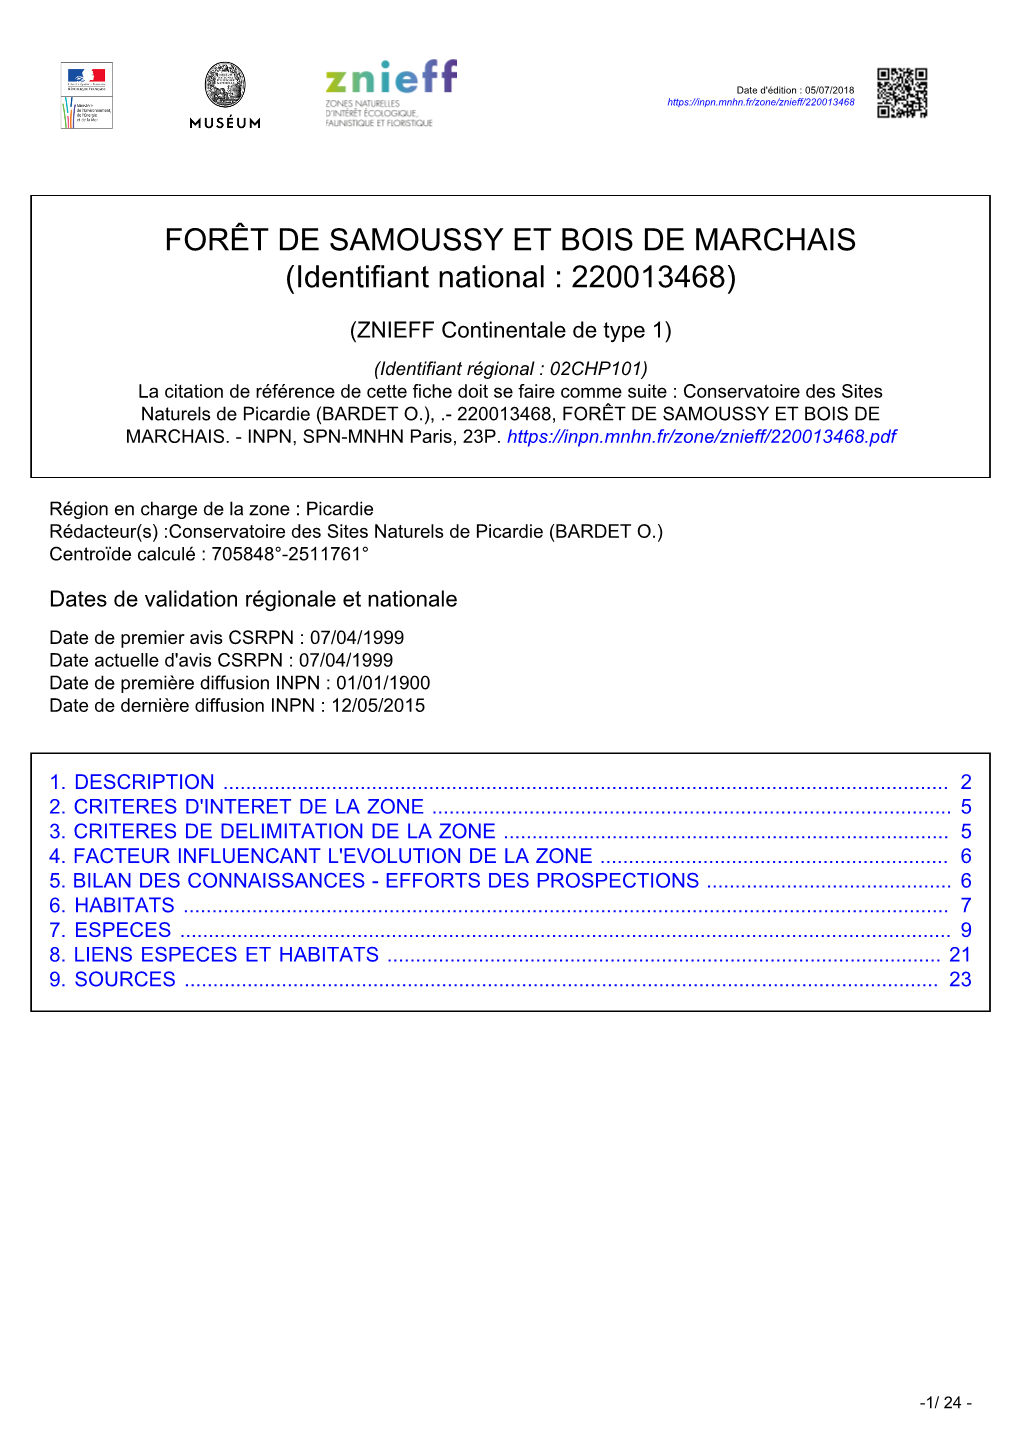 FORÊT DE SAMOUSSY ET BOIS DE MARCHAIS (Identifiant National : 220013468)